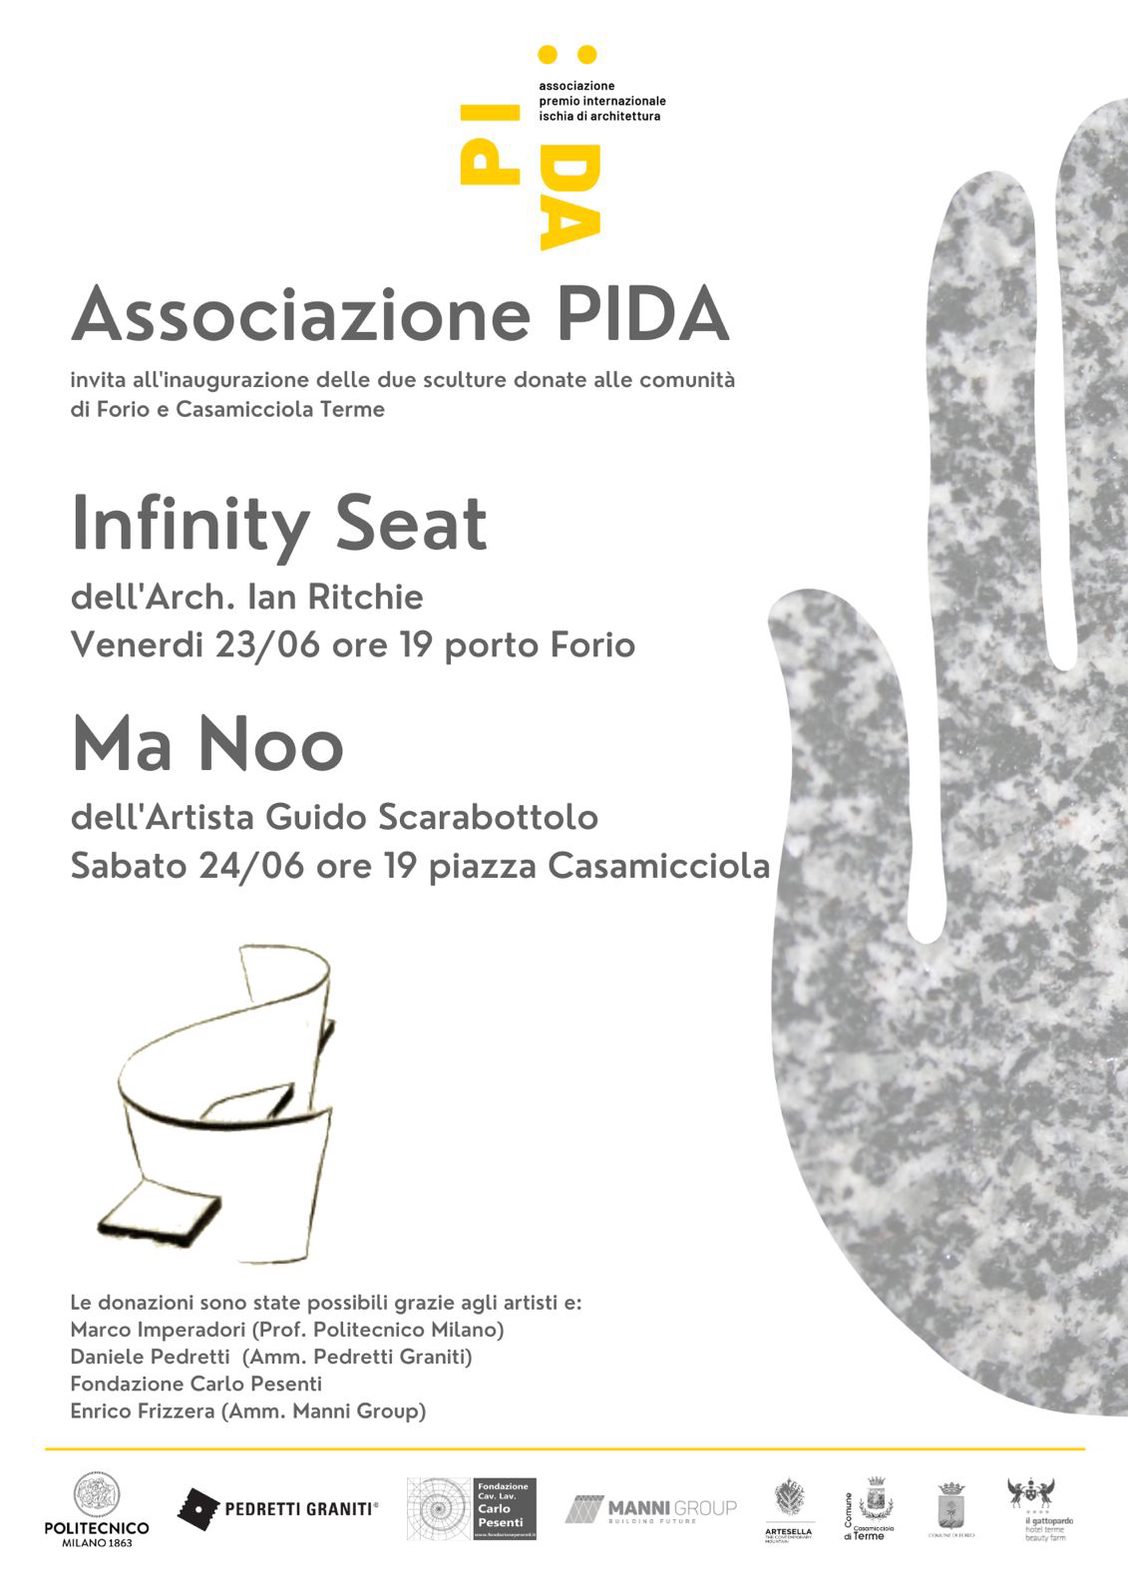 Donazione ed inaugurazione opere d'arte "Infinity Seat"